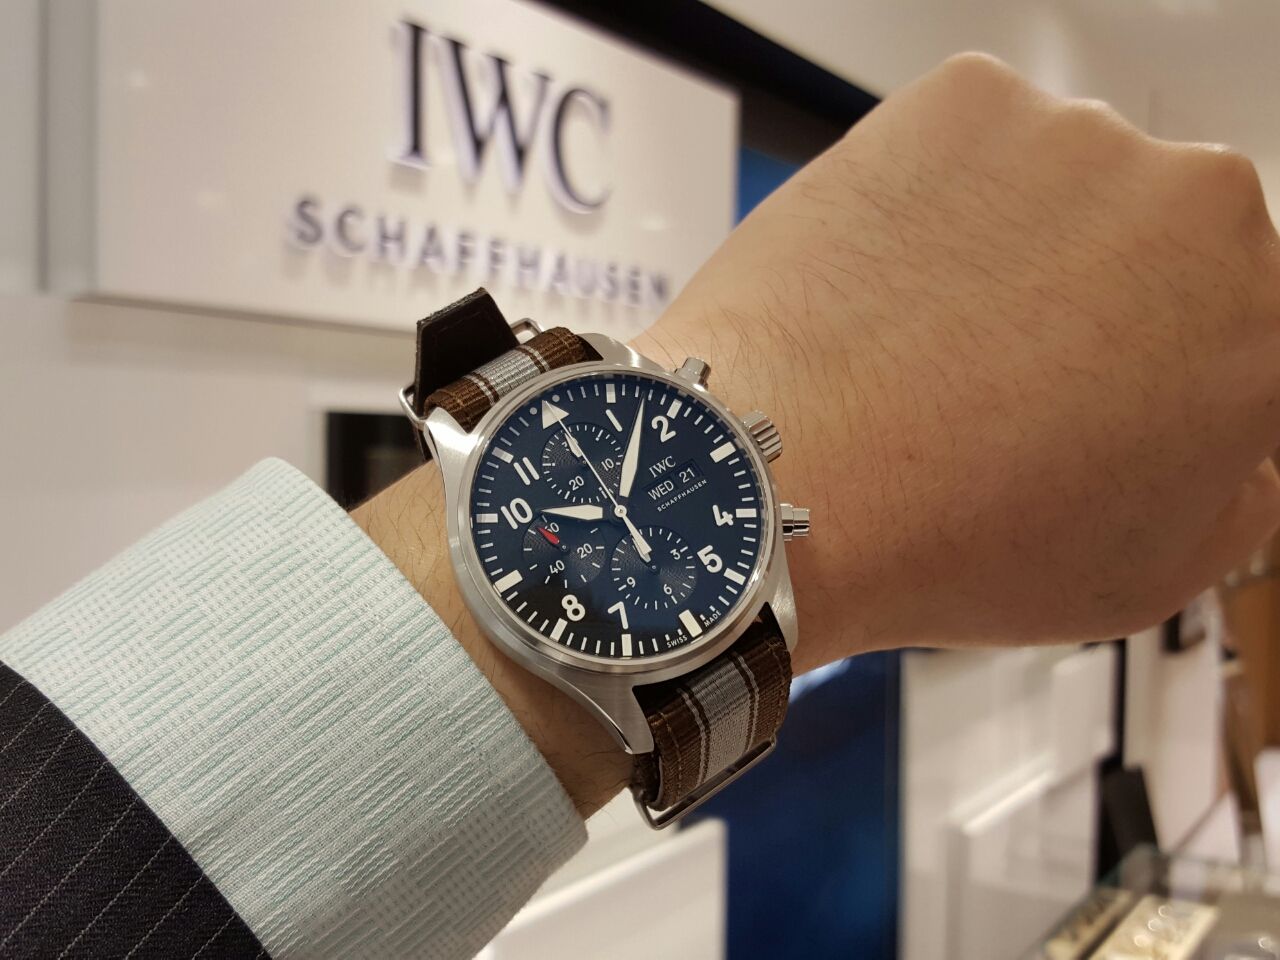 Iwc Natoストラップに付け替えオススメです 機械式腕時計専門店 Hf Age 仙台店のブログ